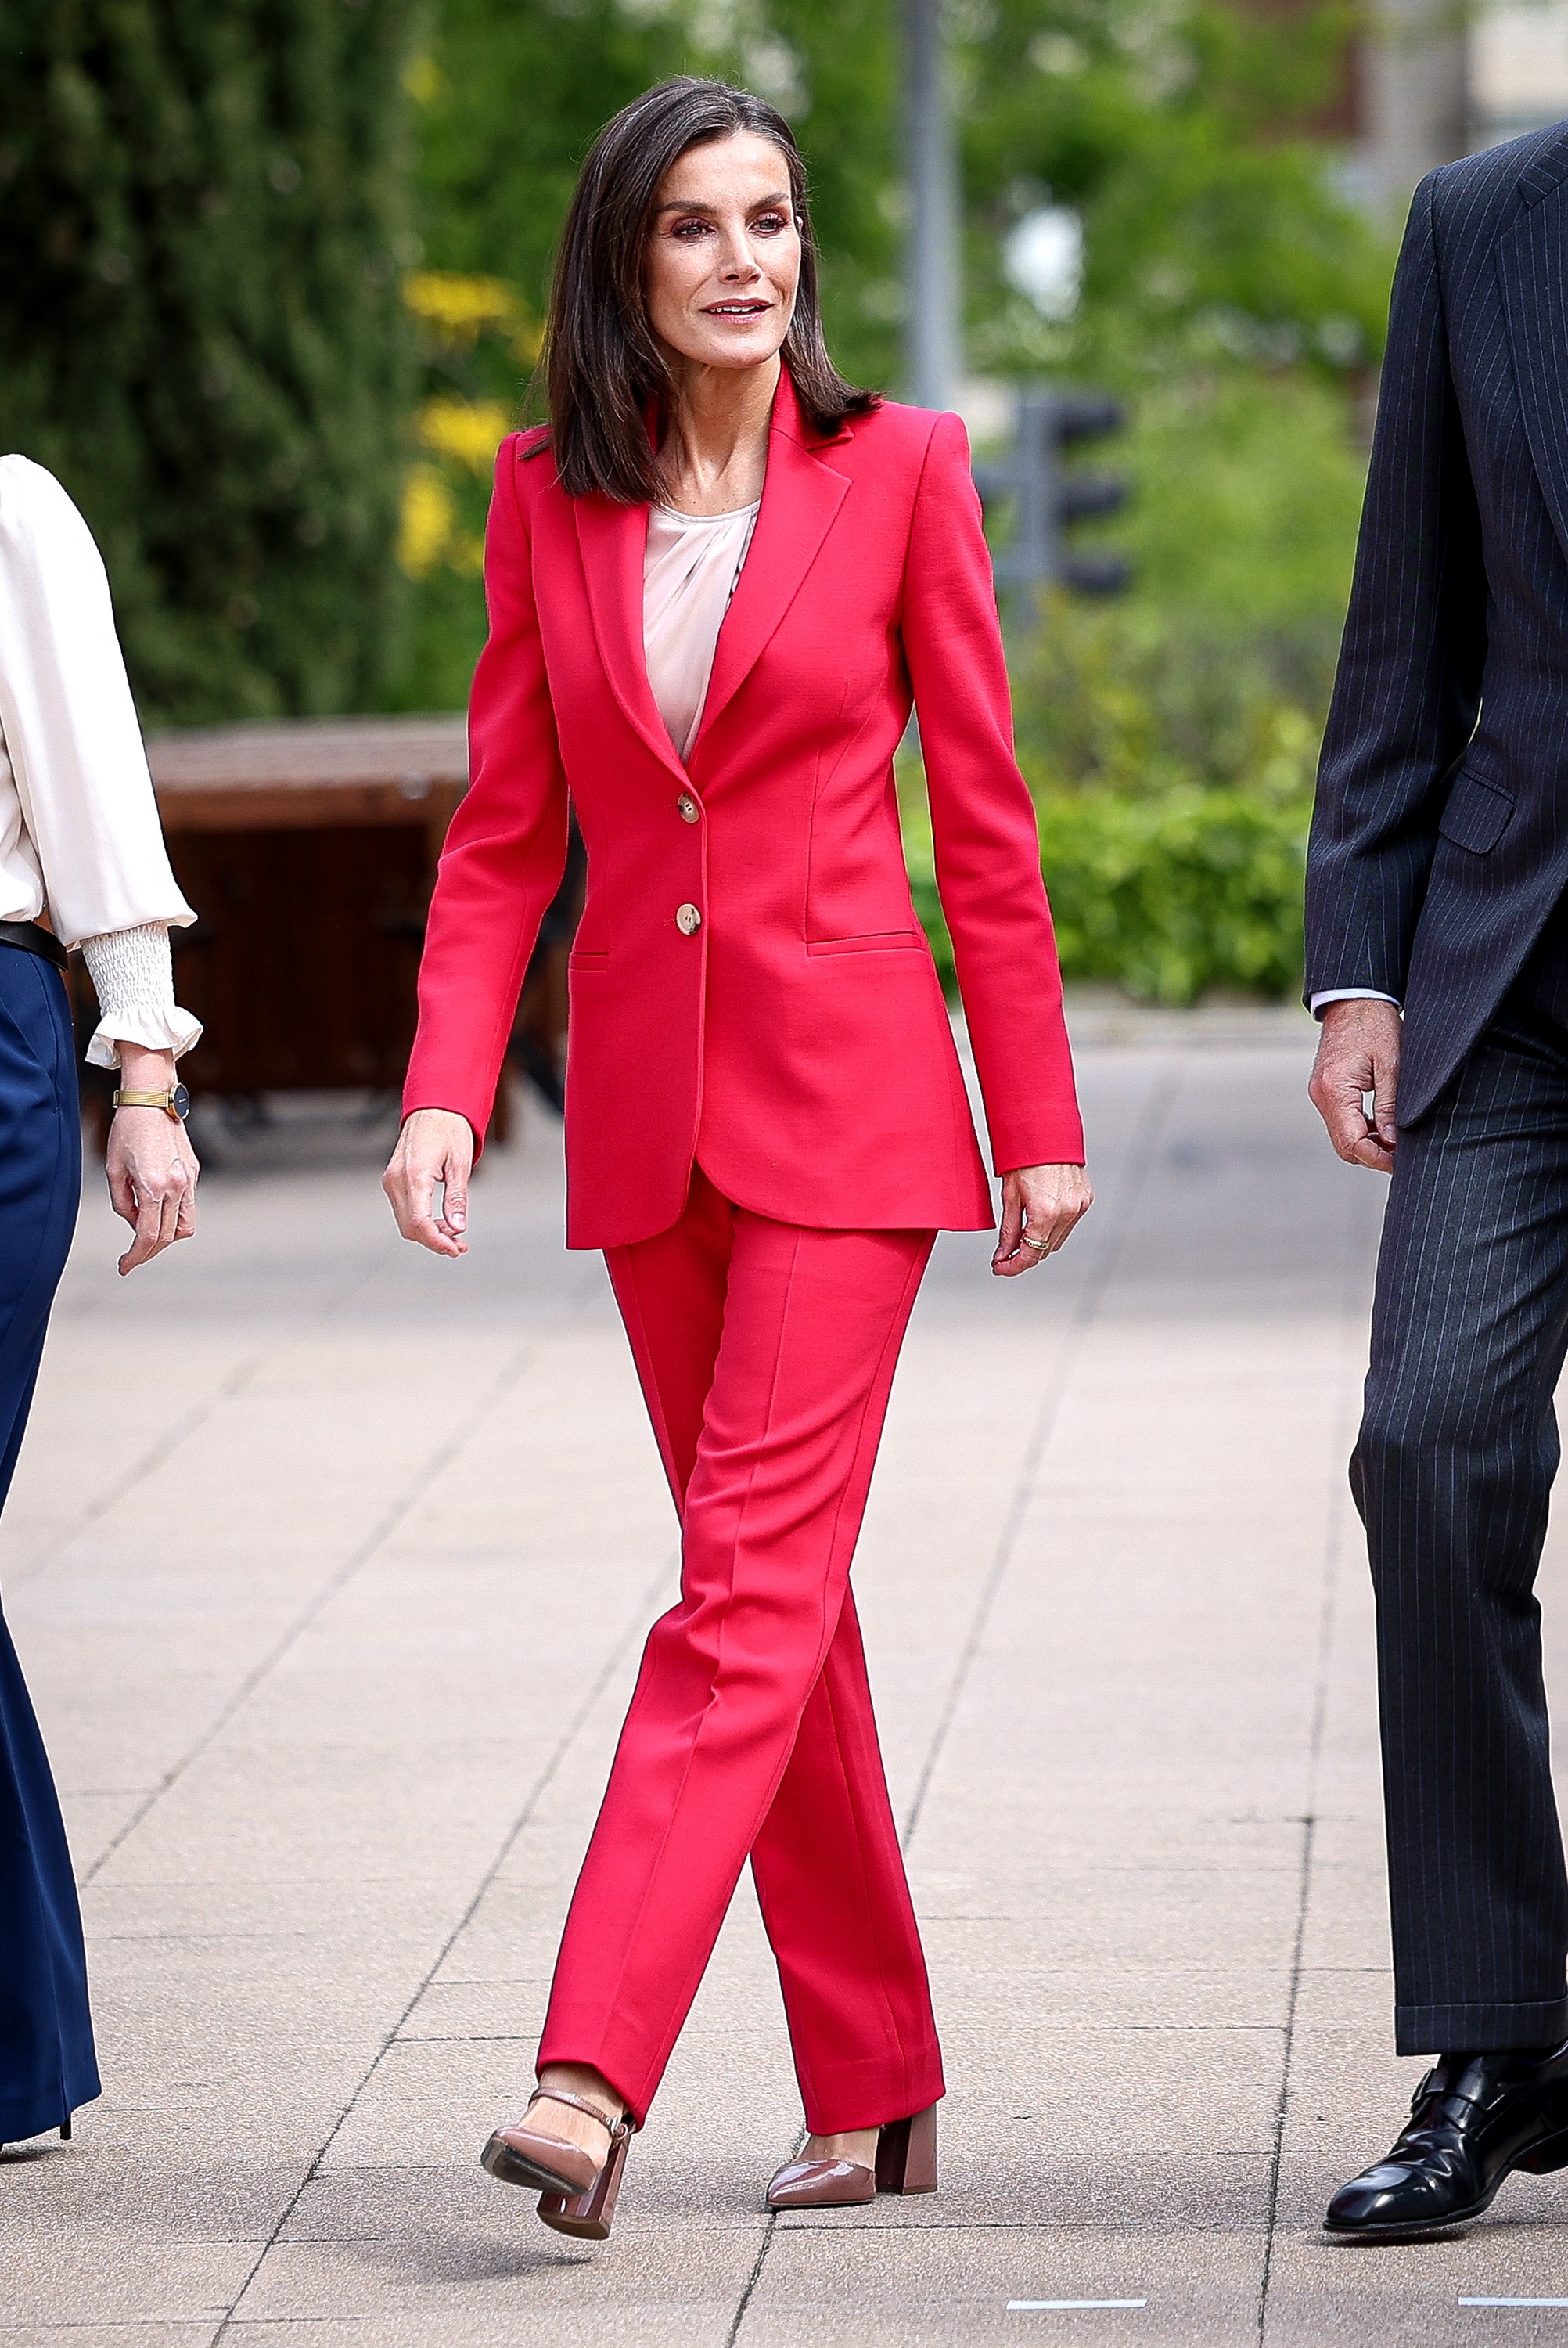 la reina letizia lleva el traje sastre rojo fuego con zapatos de tacón de mujer poderosa